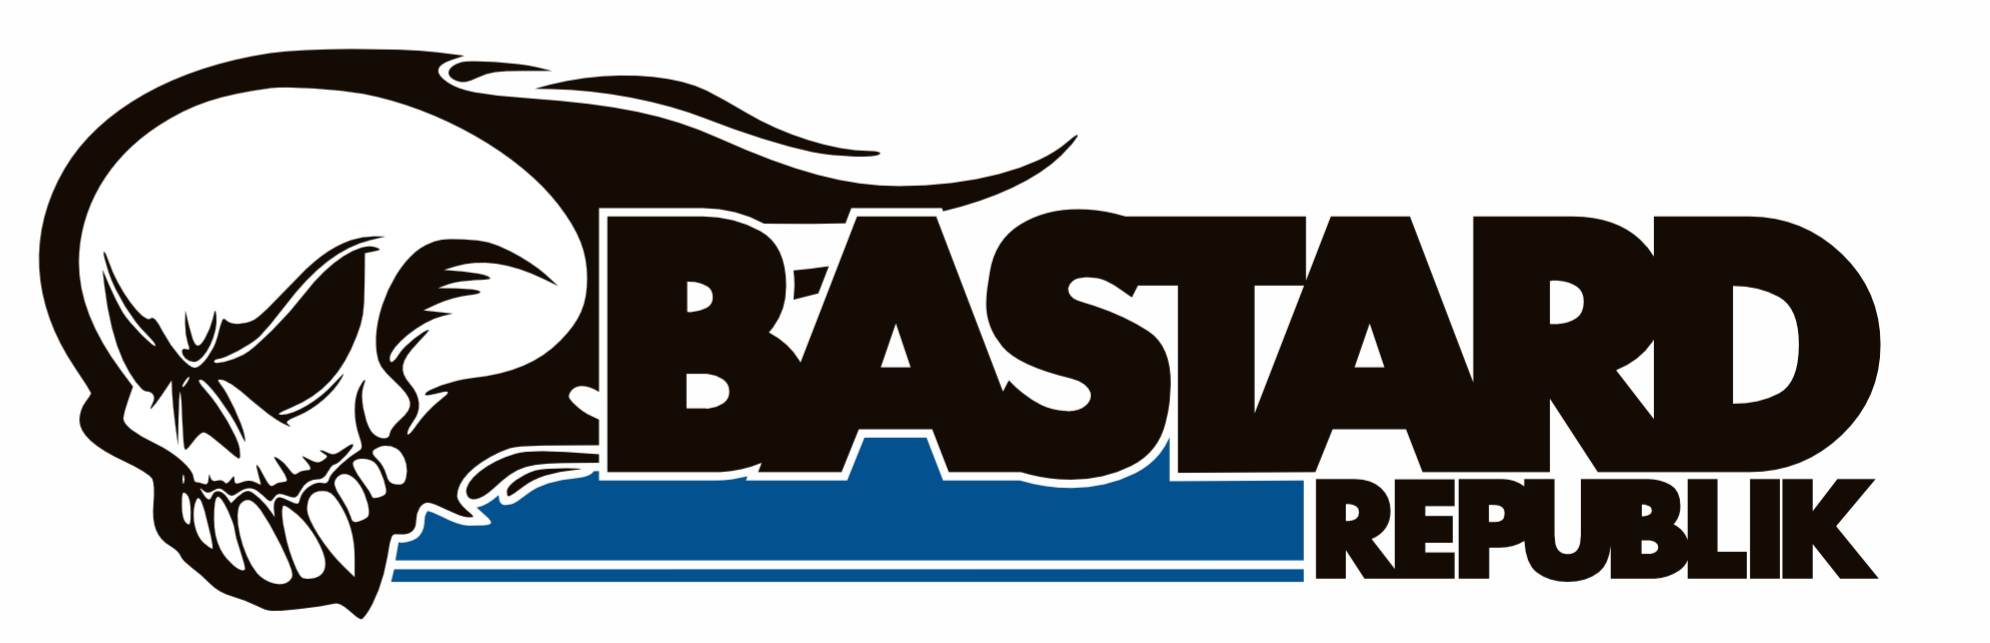 bastard_logo